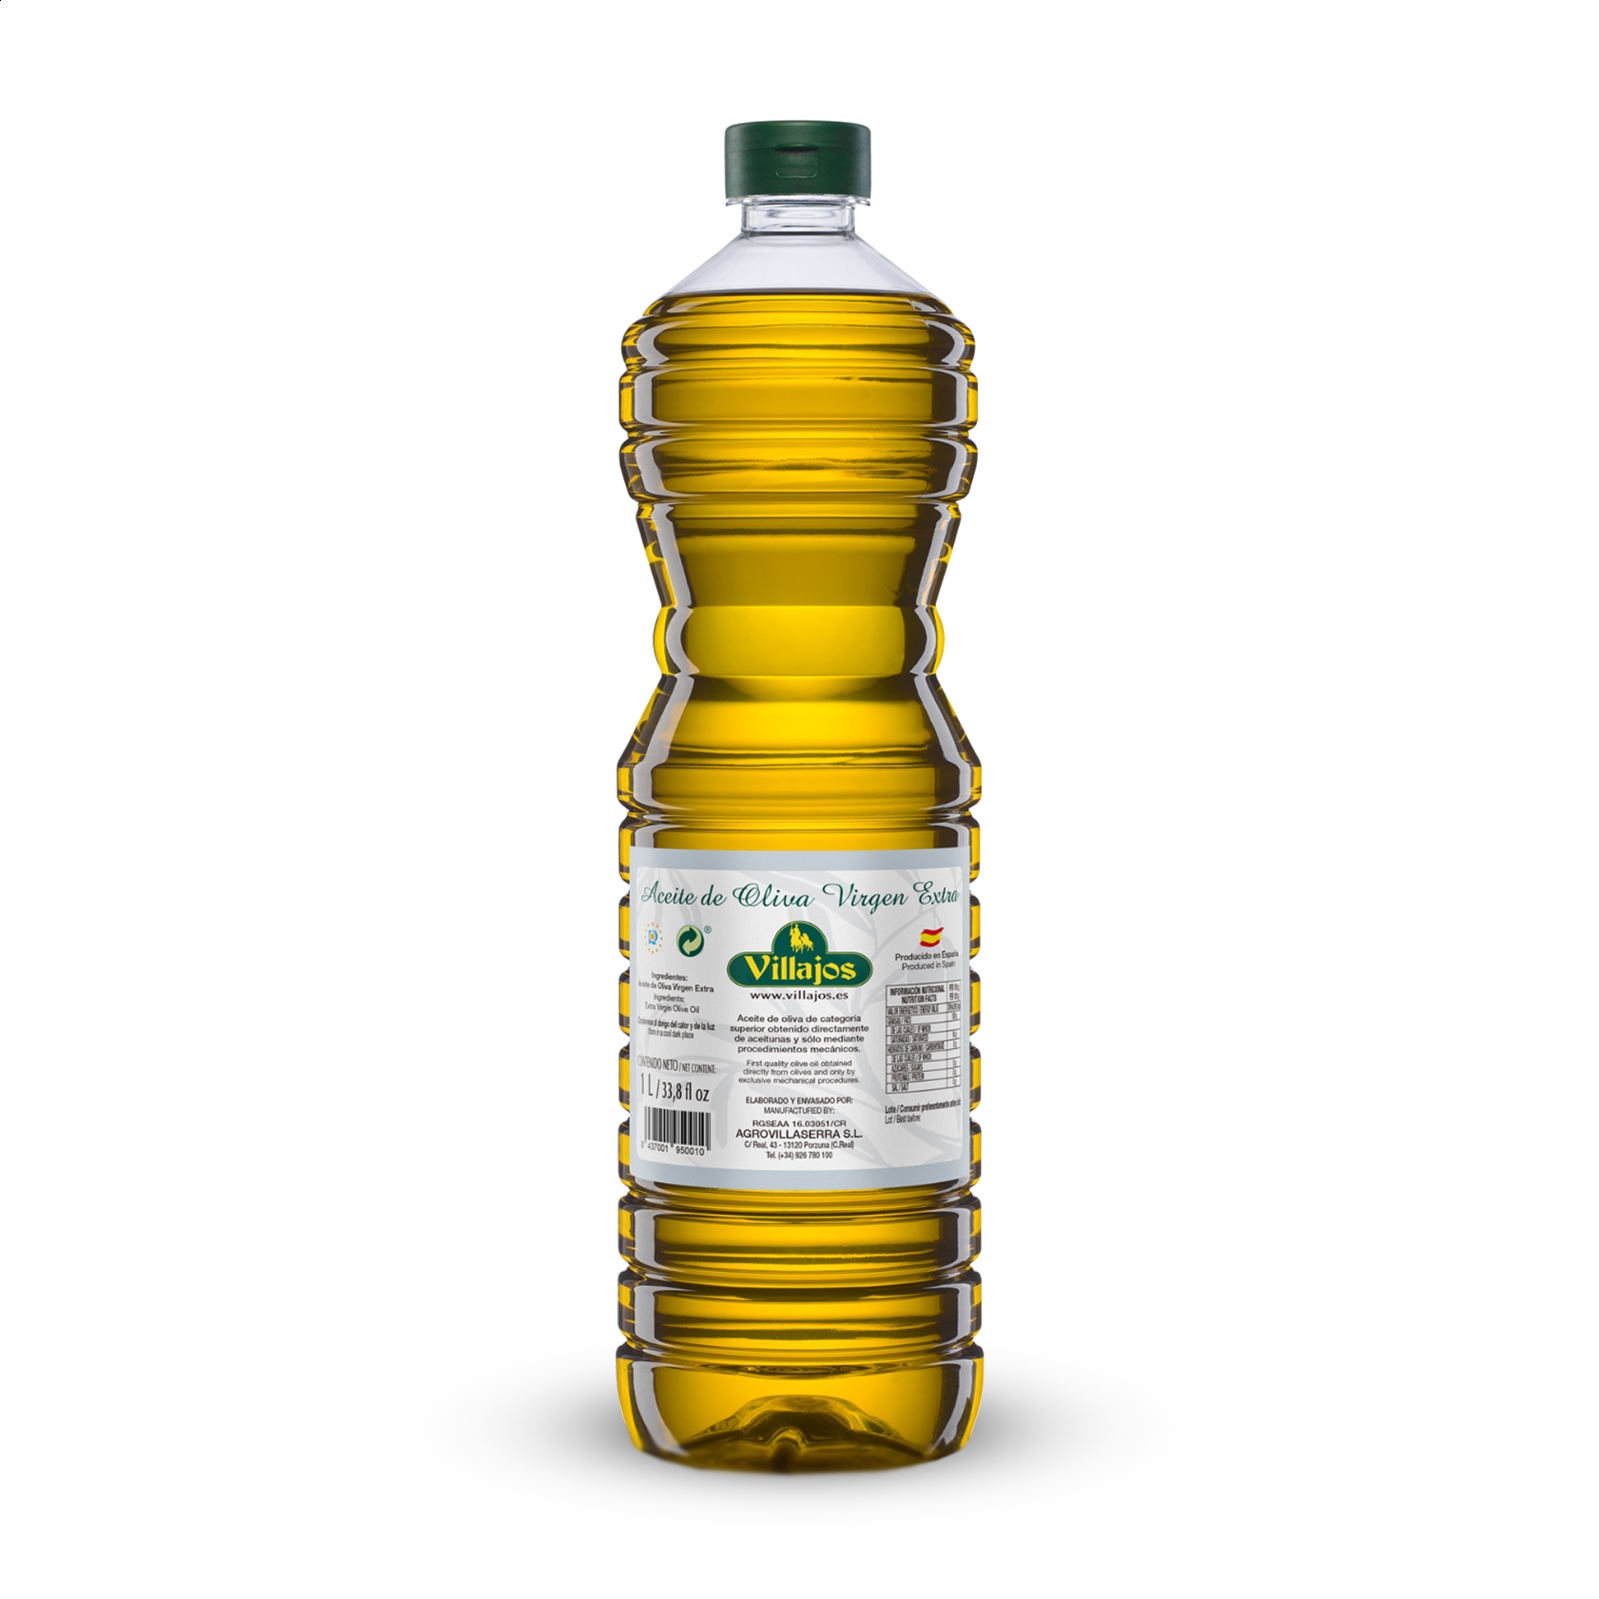 Villajos - Aceite de oliva virgen extra 1L, 1ud